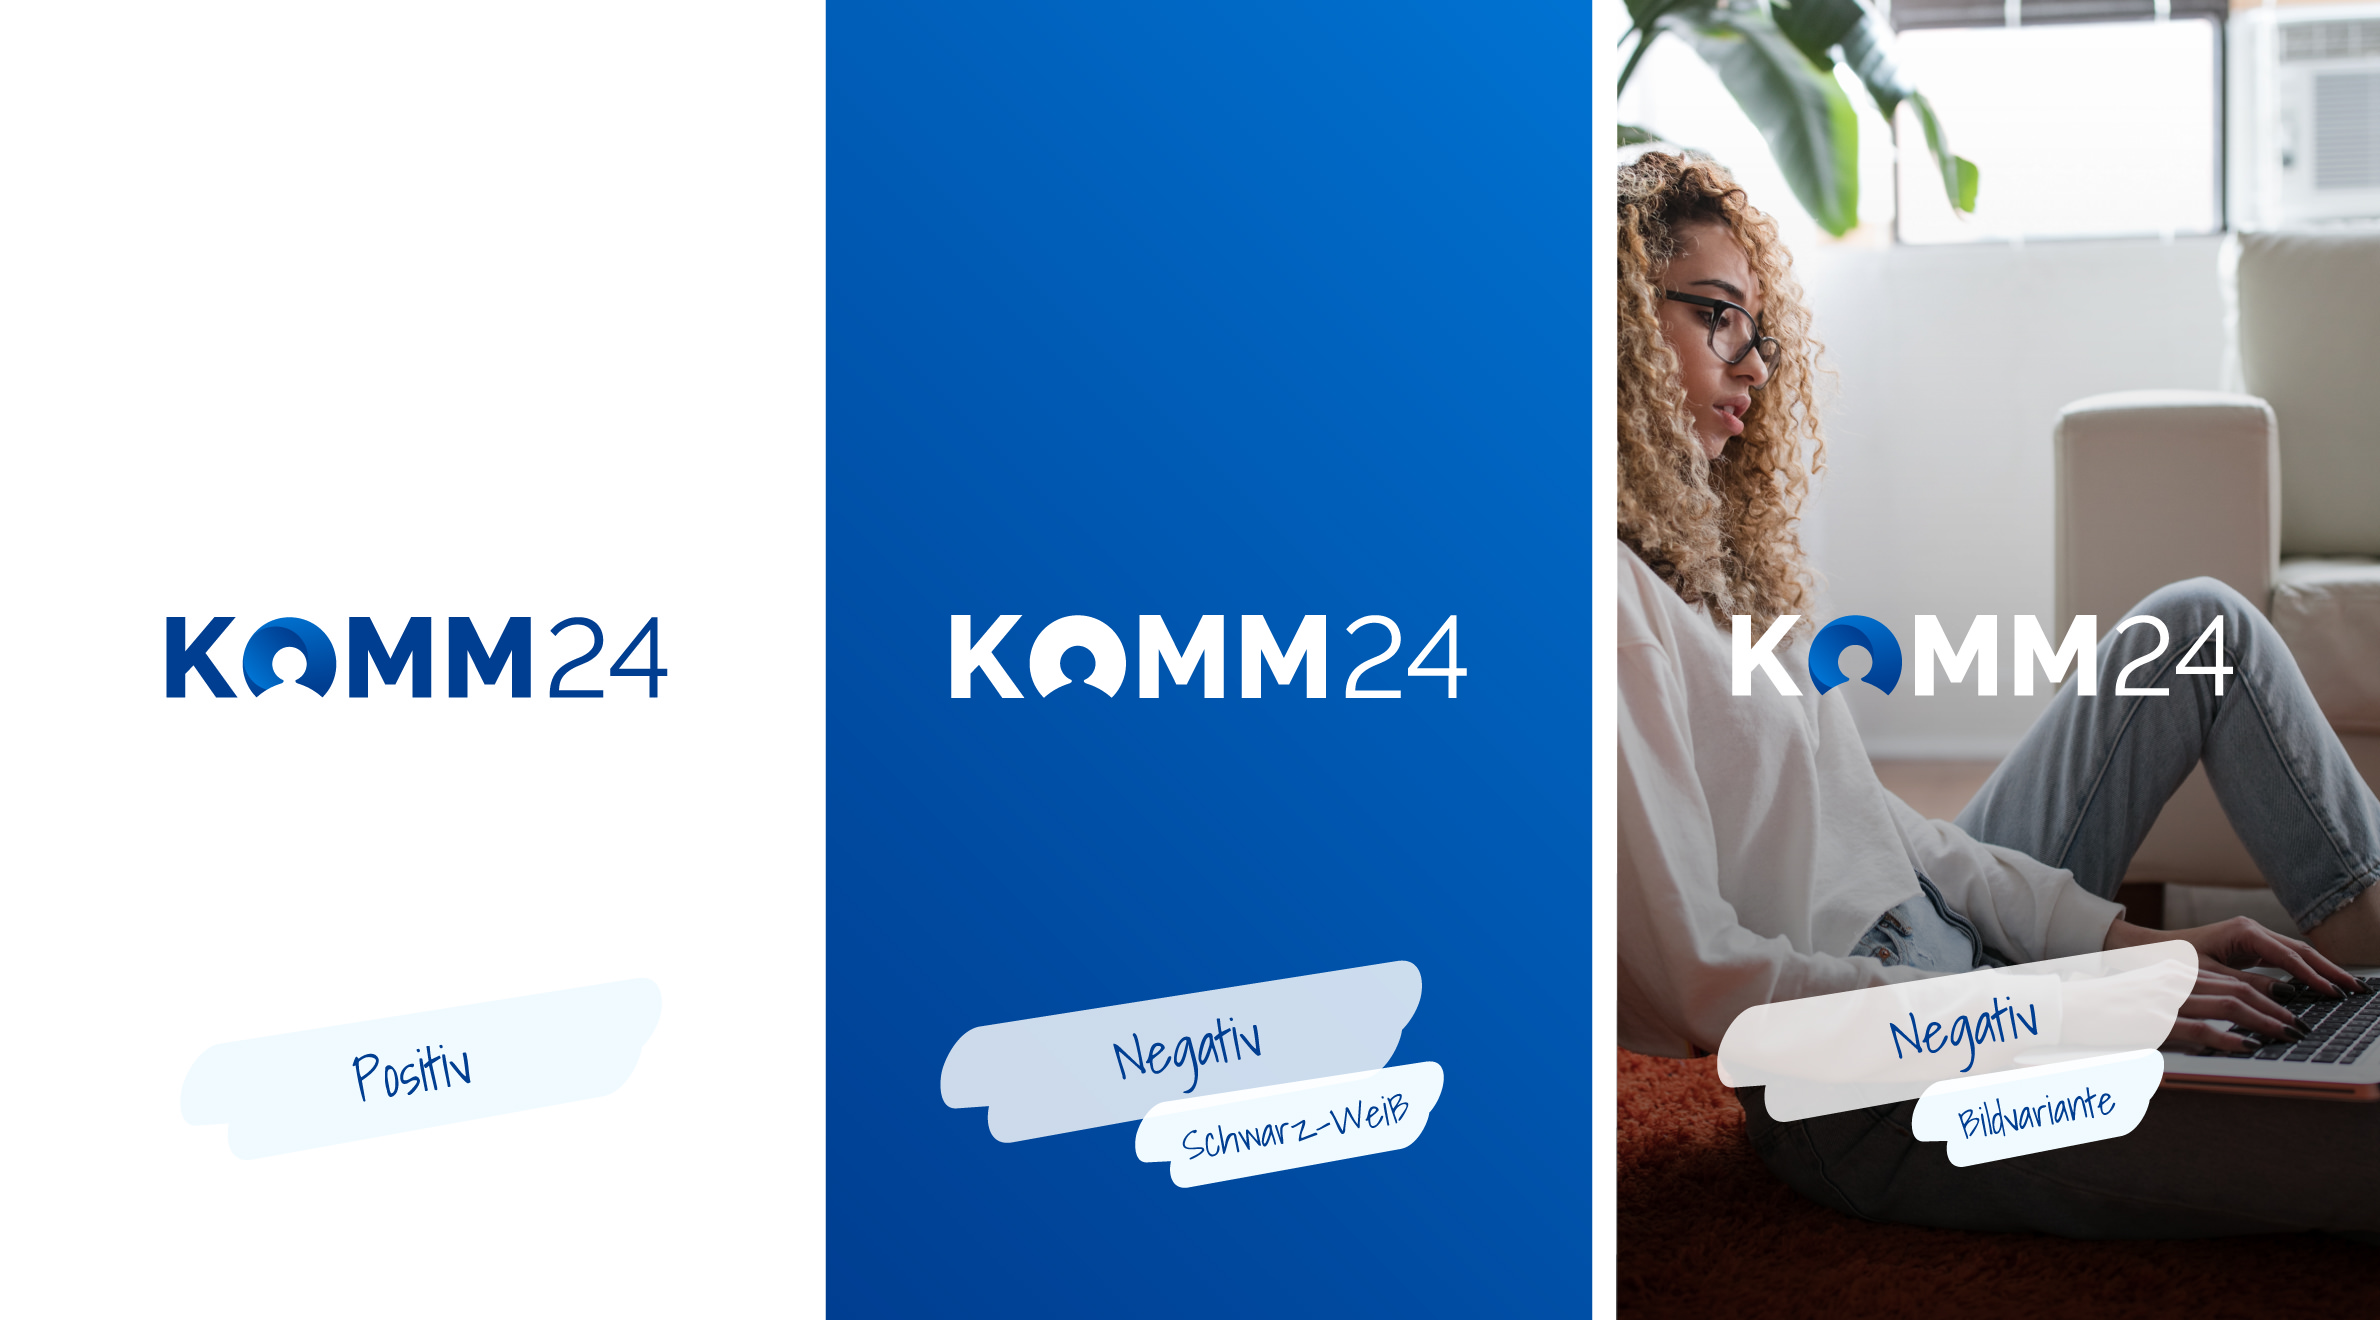 Komm24, Logo - Varianten